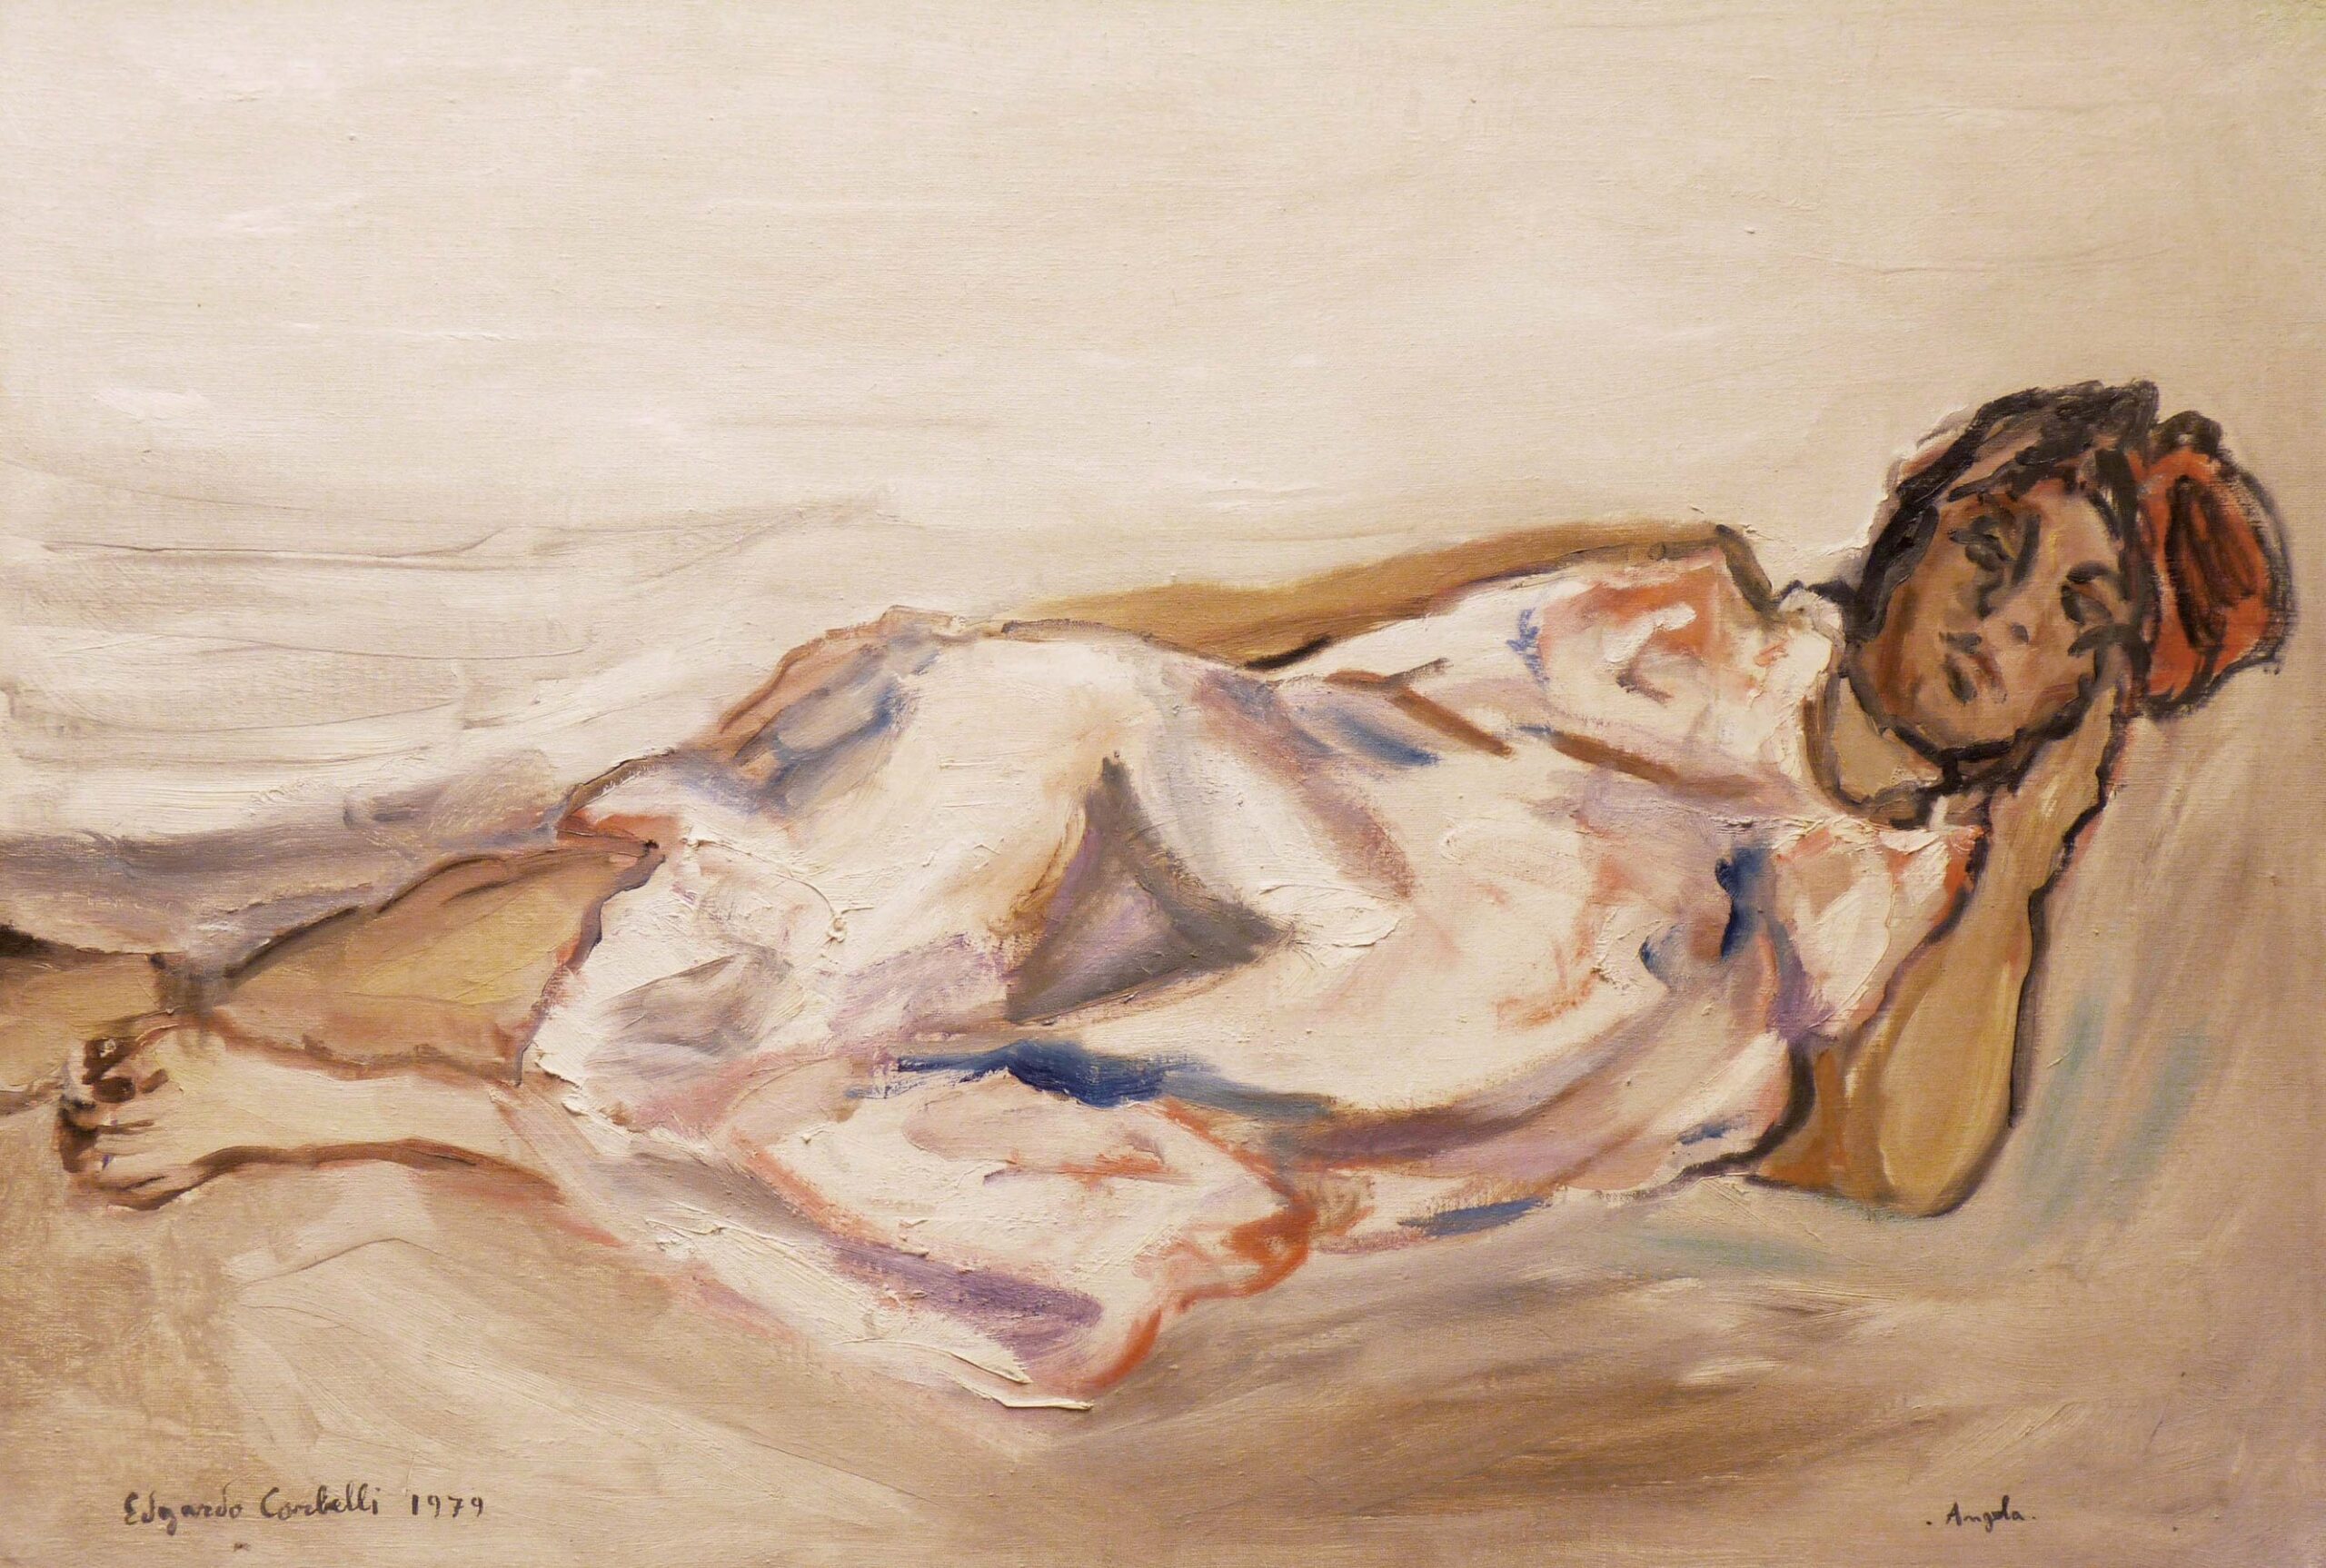 Corbelli, Italian art, expressionism, woman